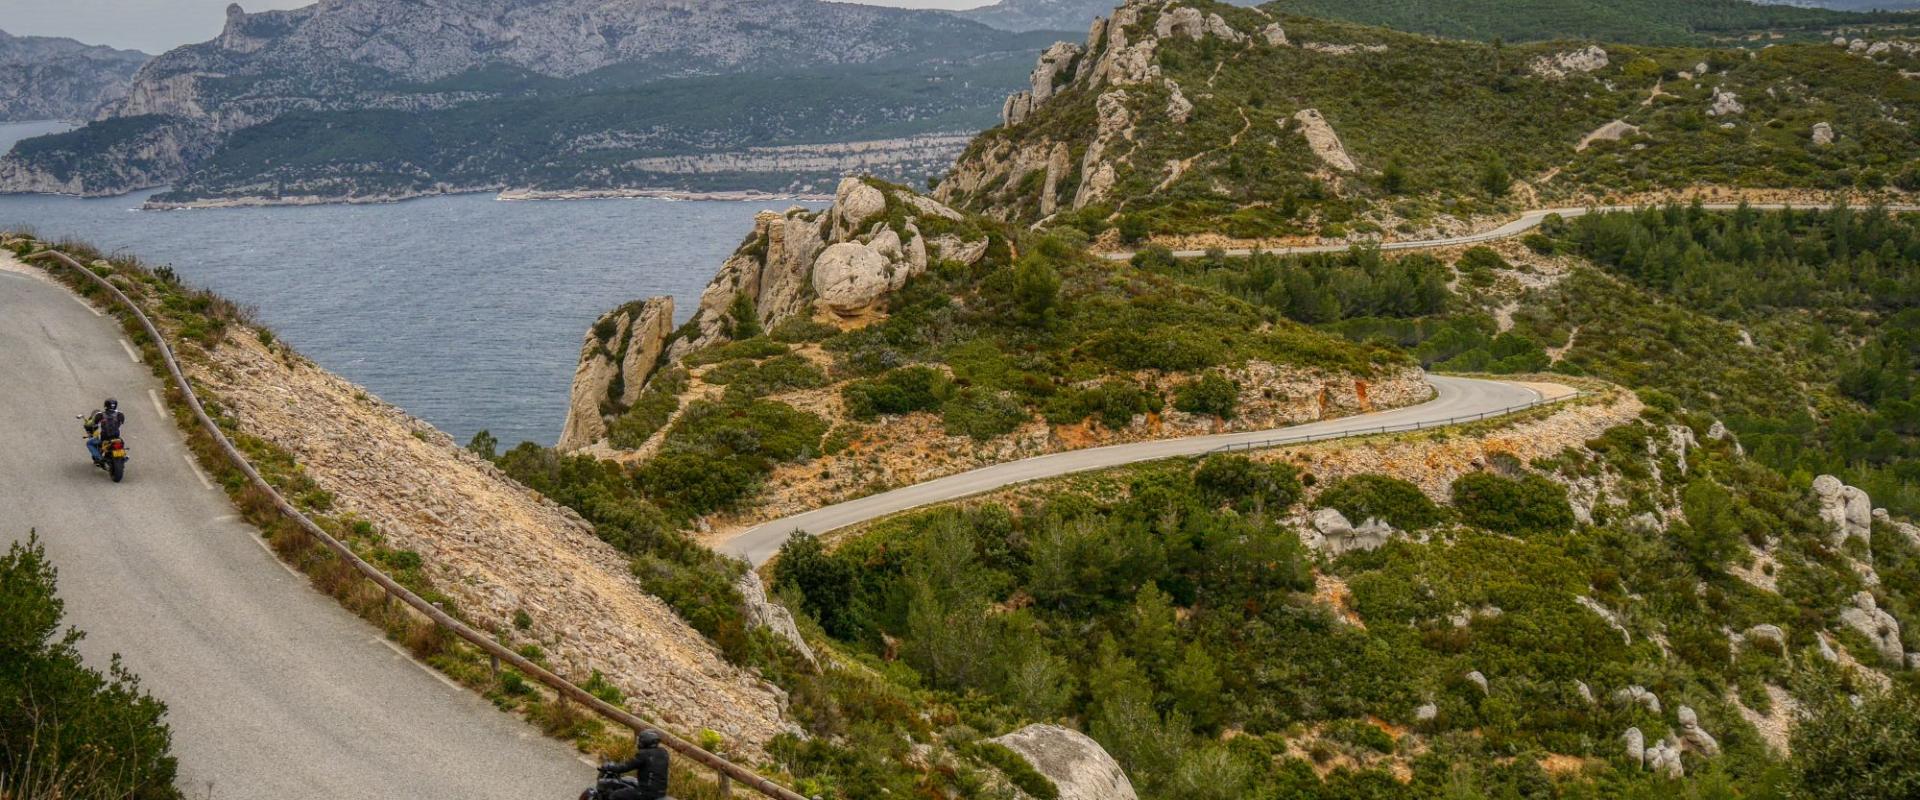 Route de Cretes Calanques PS 23.jpg